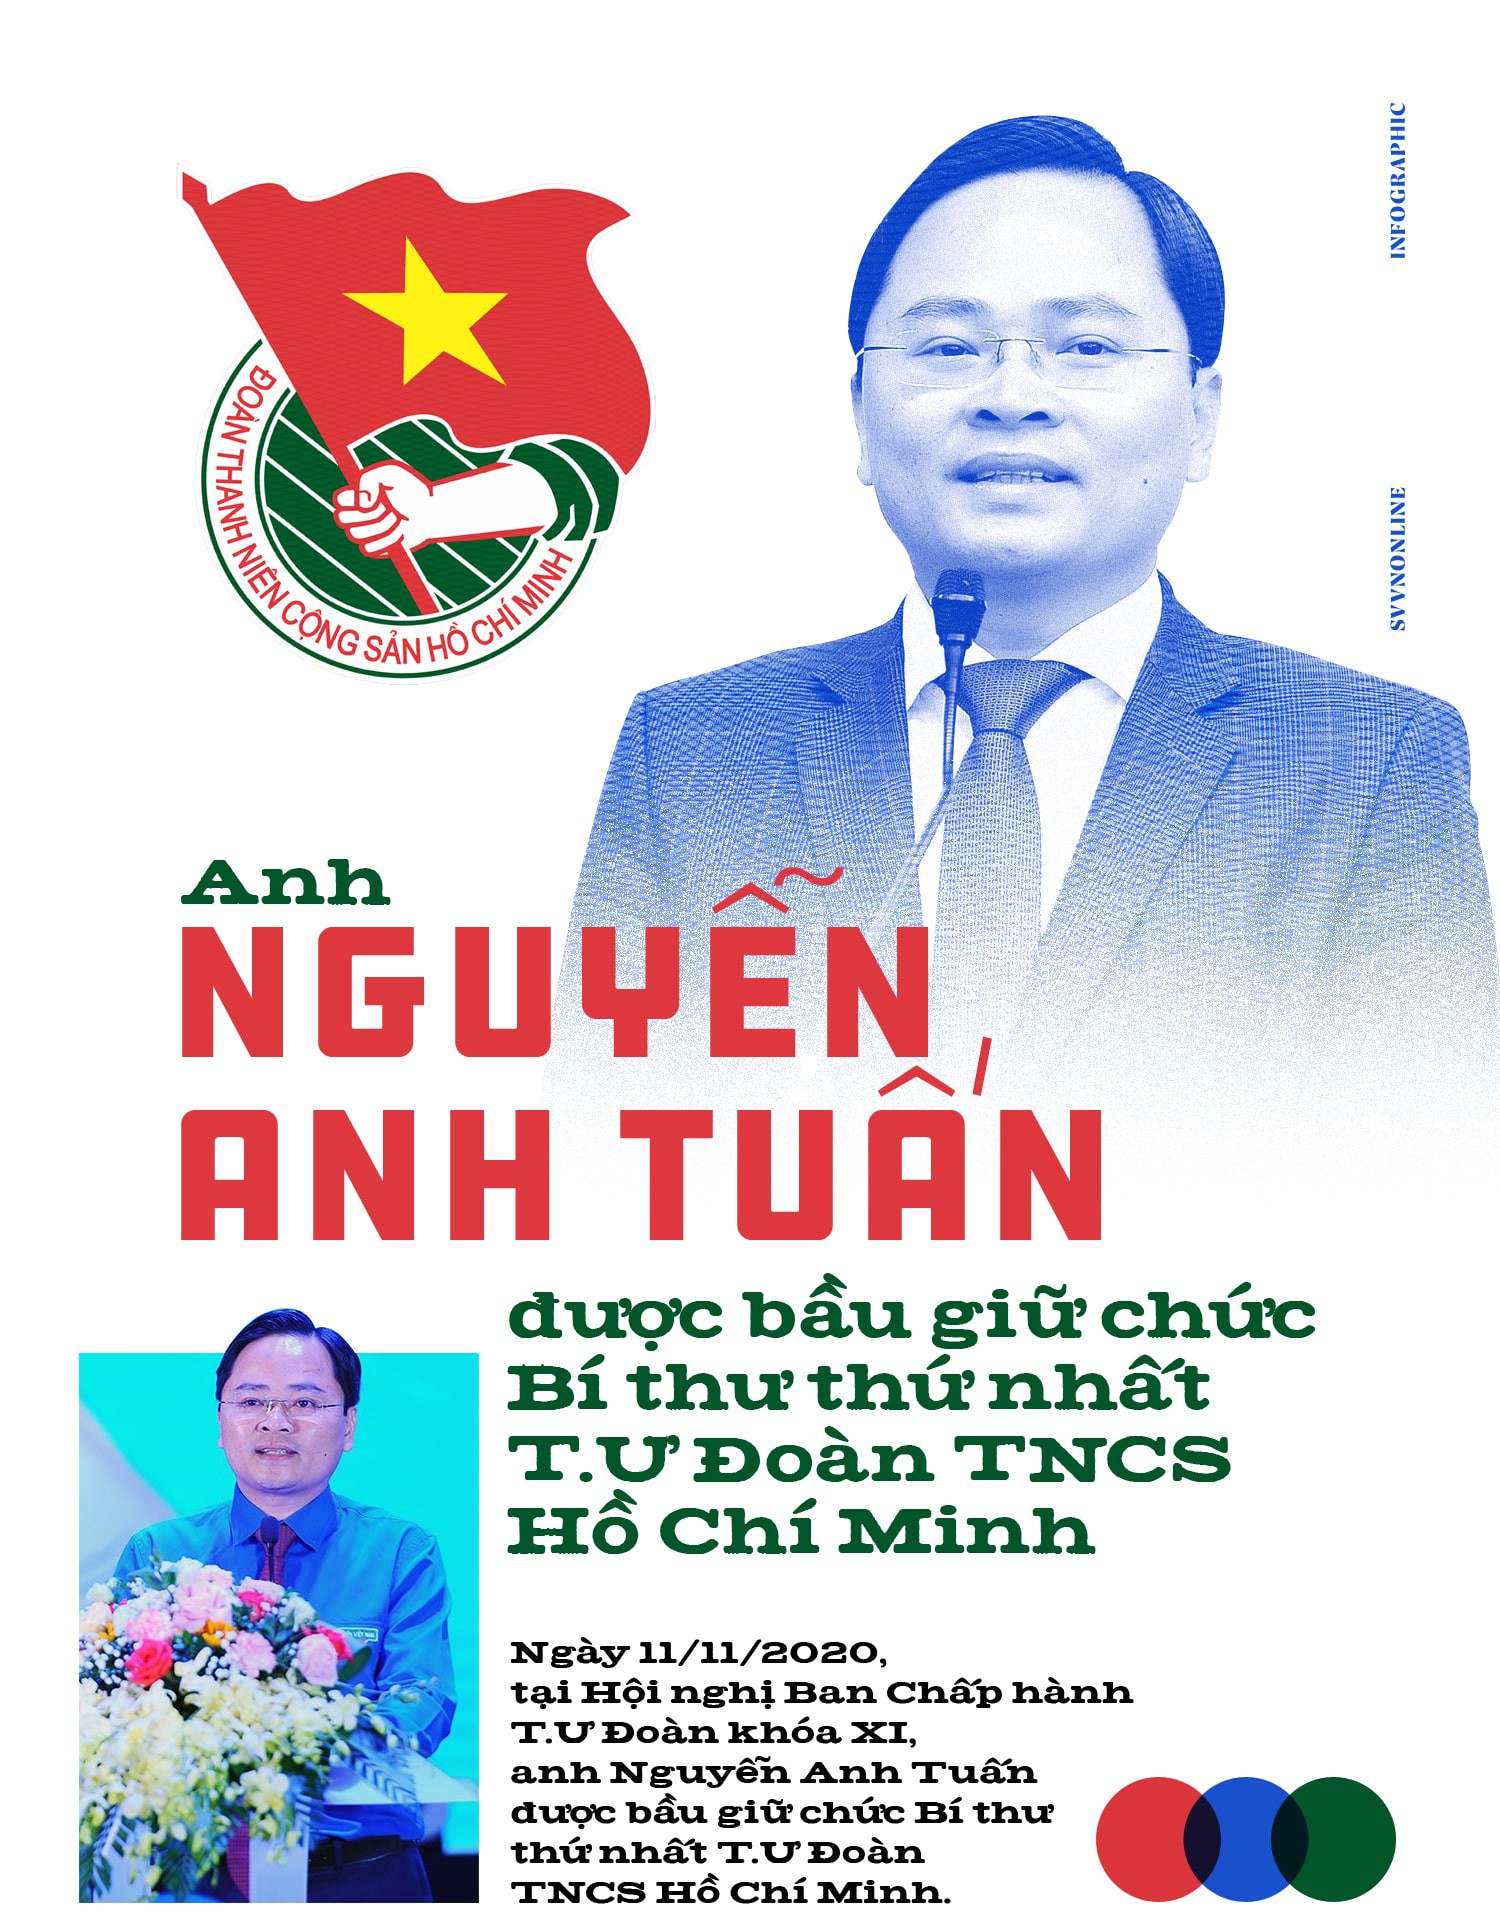 Anh Nguyễn Anh Tuấn được bầu giữ chức Bí thư thứ nhất T.Ư Đoàn TNCS Hồ Chí Minh